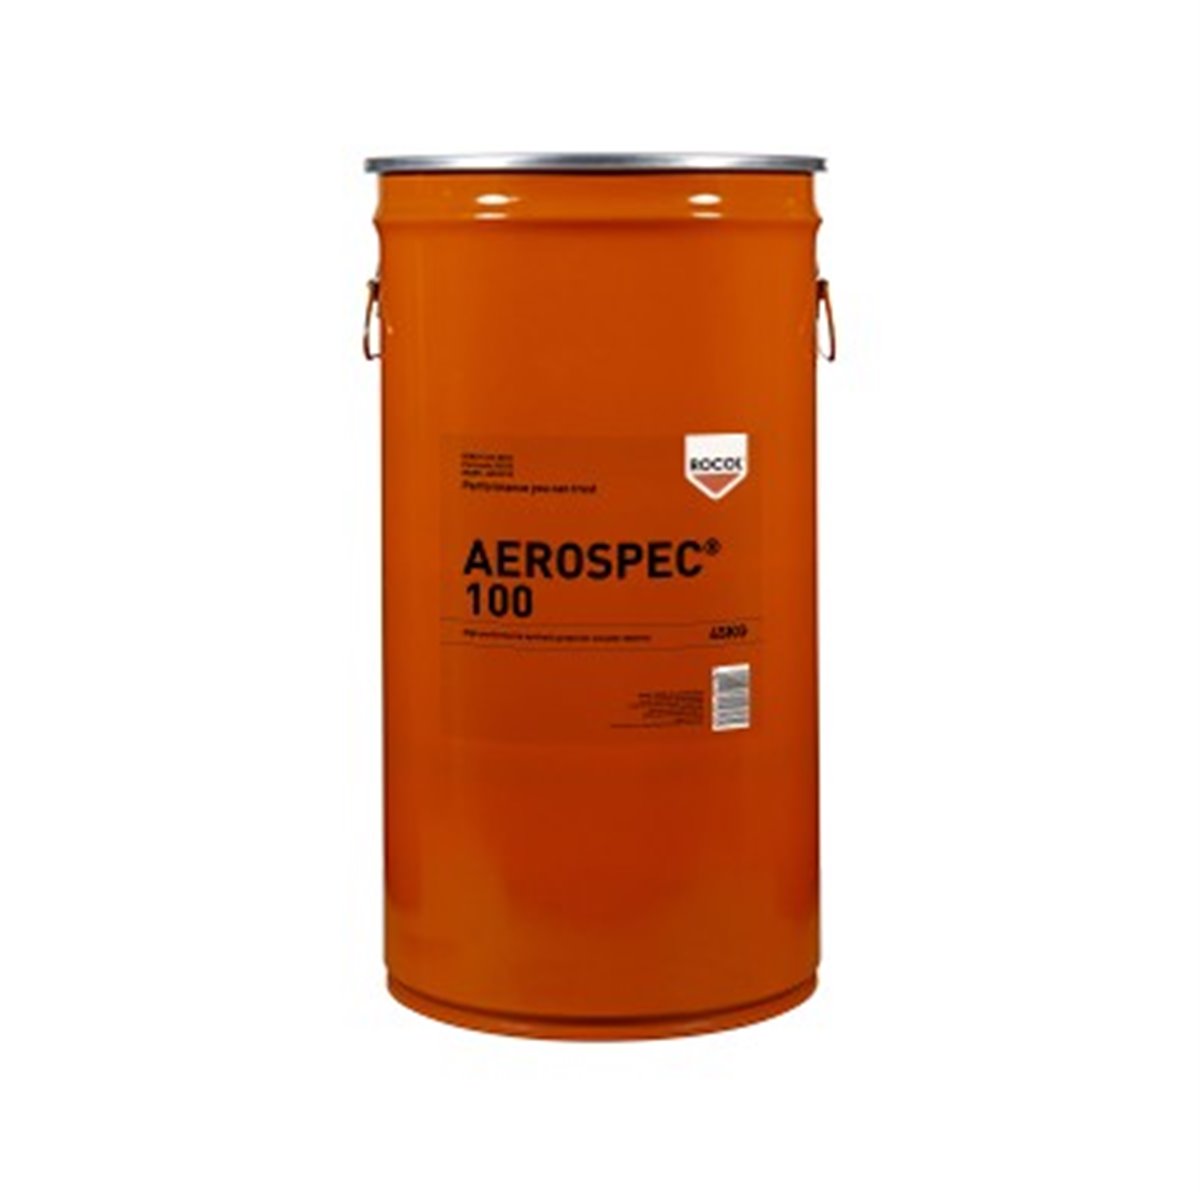 AEROSPEC 100 Rocol 45kg RS16517